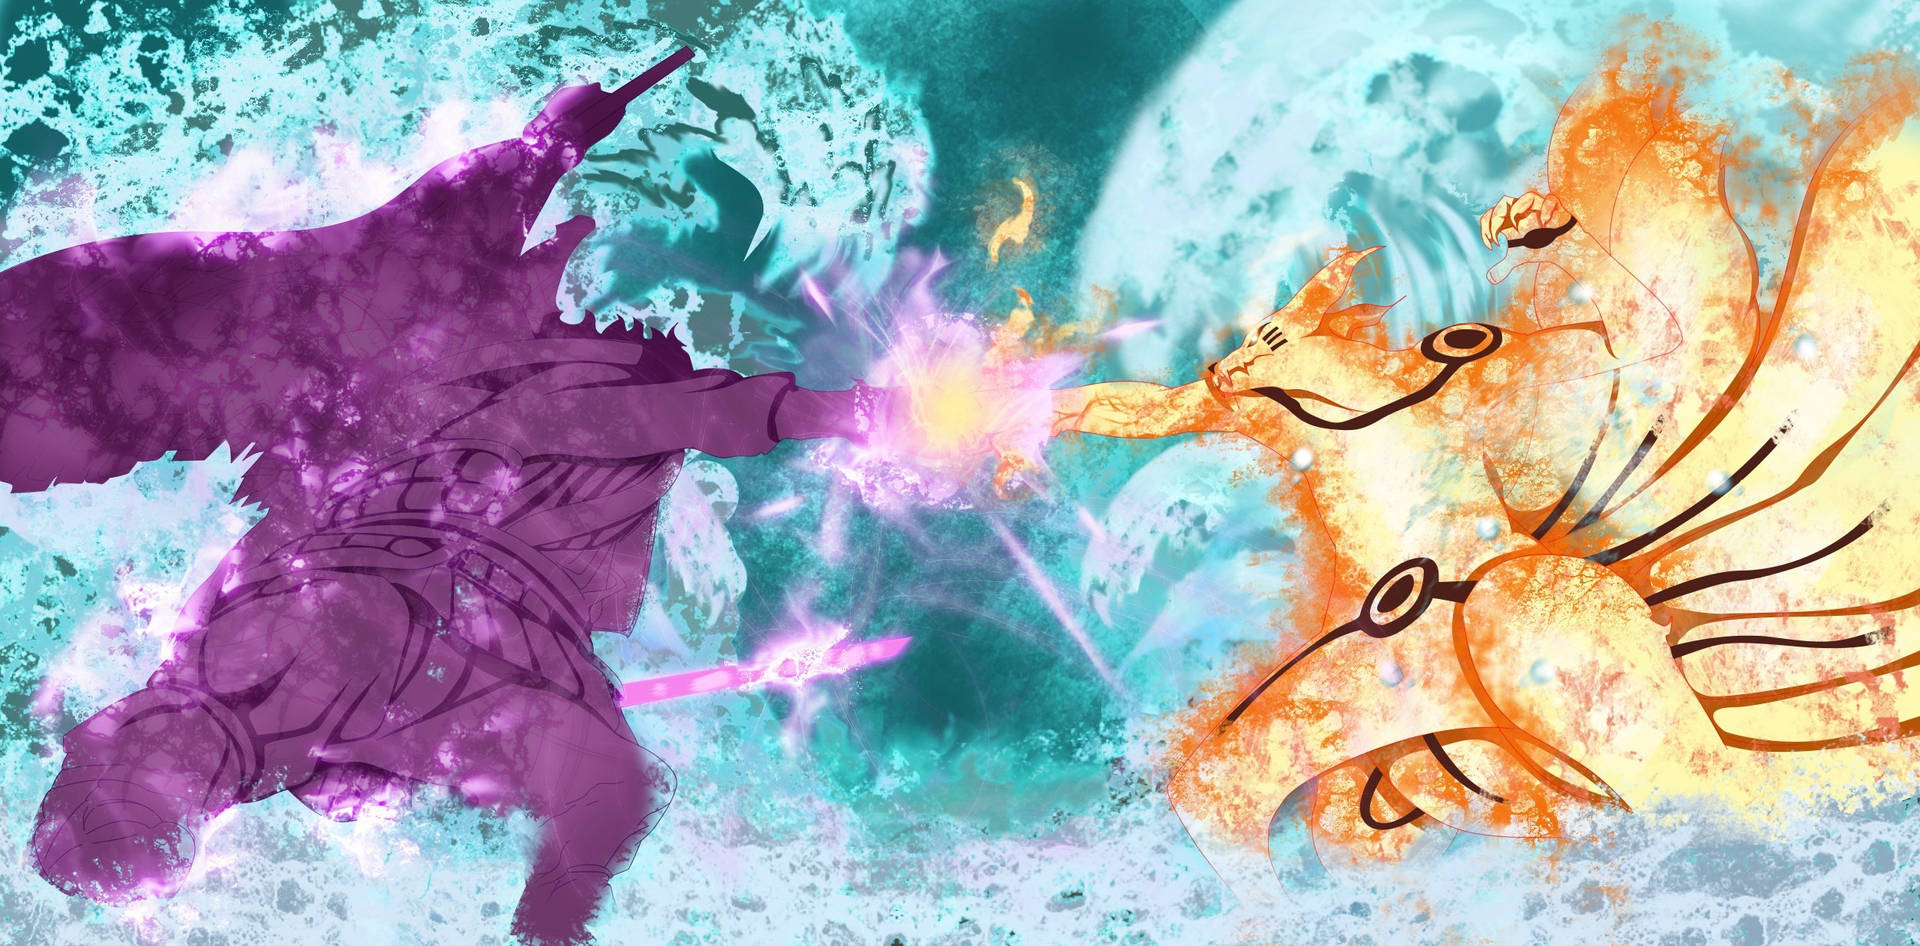 itachi uchiha vs sasuke uchiha final battle